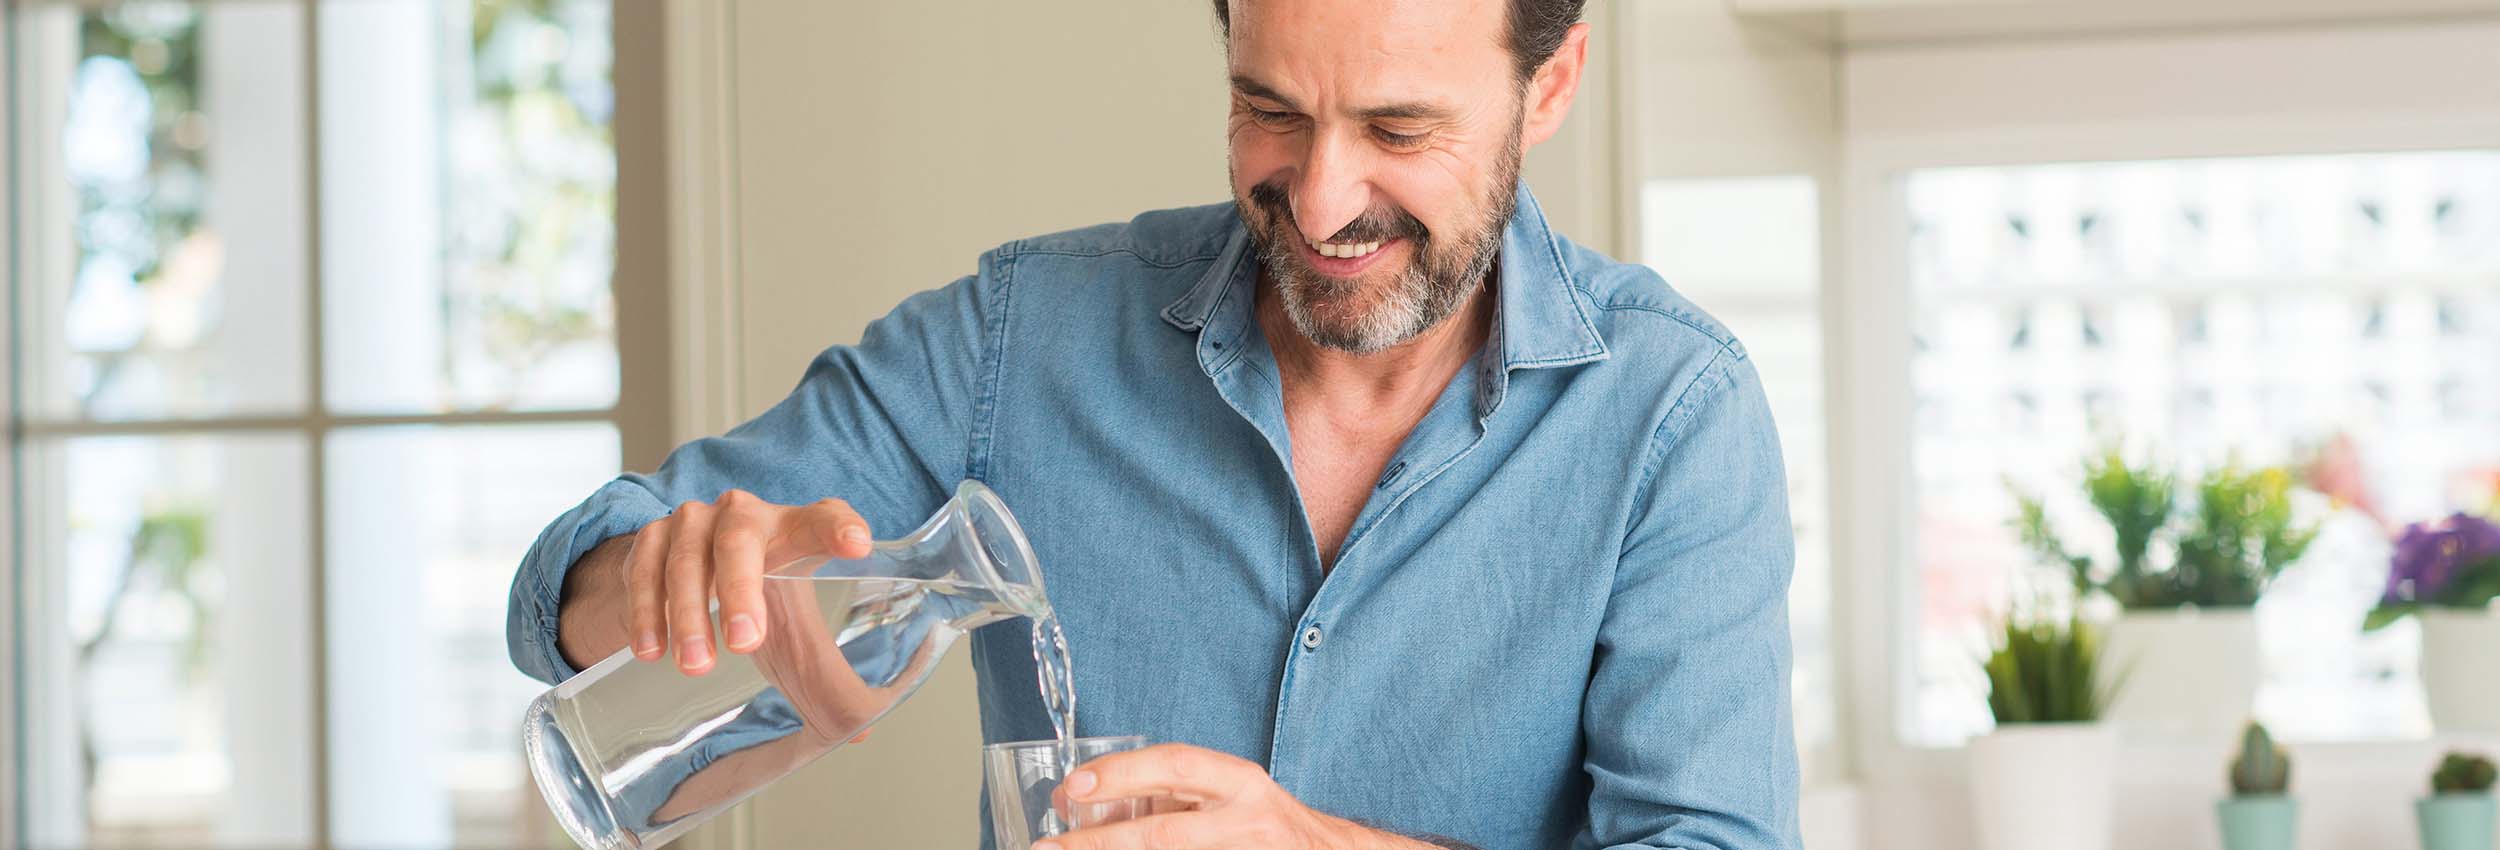 Mann schenkt sich ein Glas Wasser ein, um Prostatamittel einzunehmen.